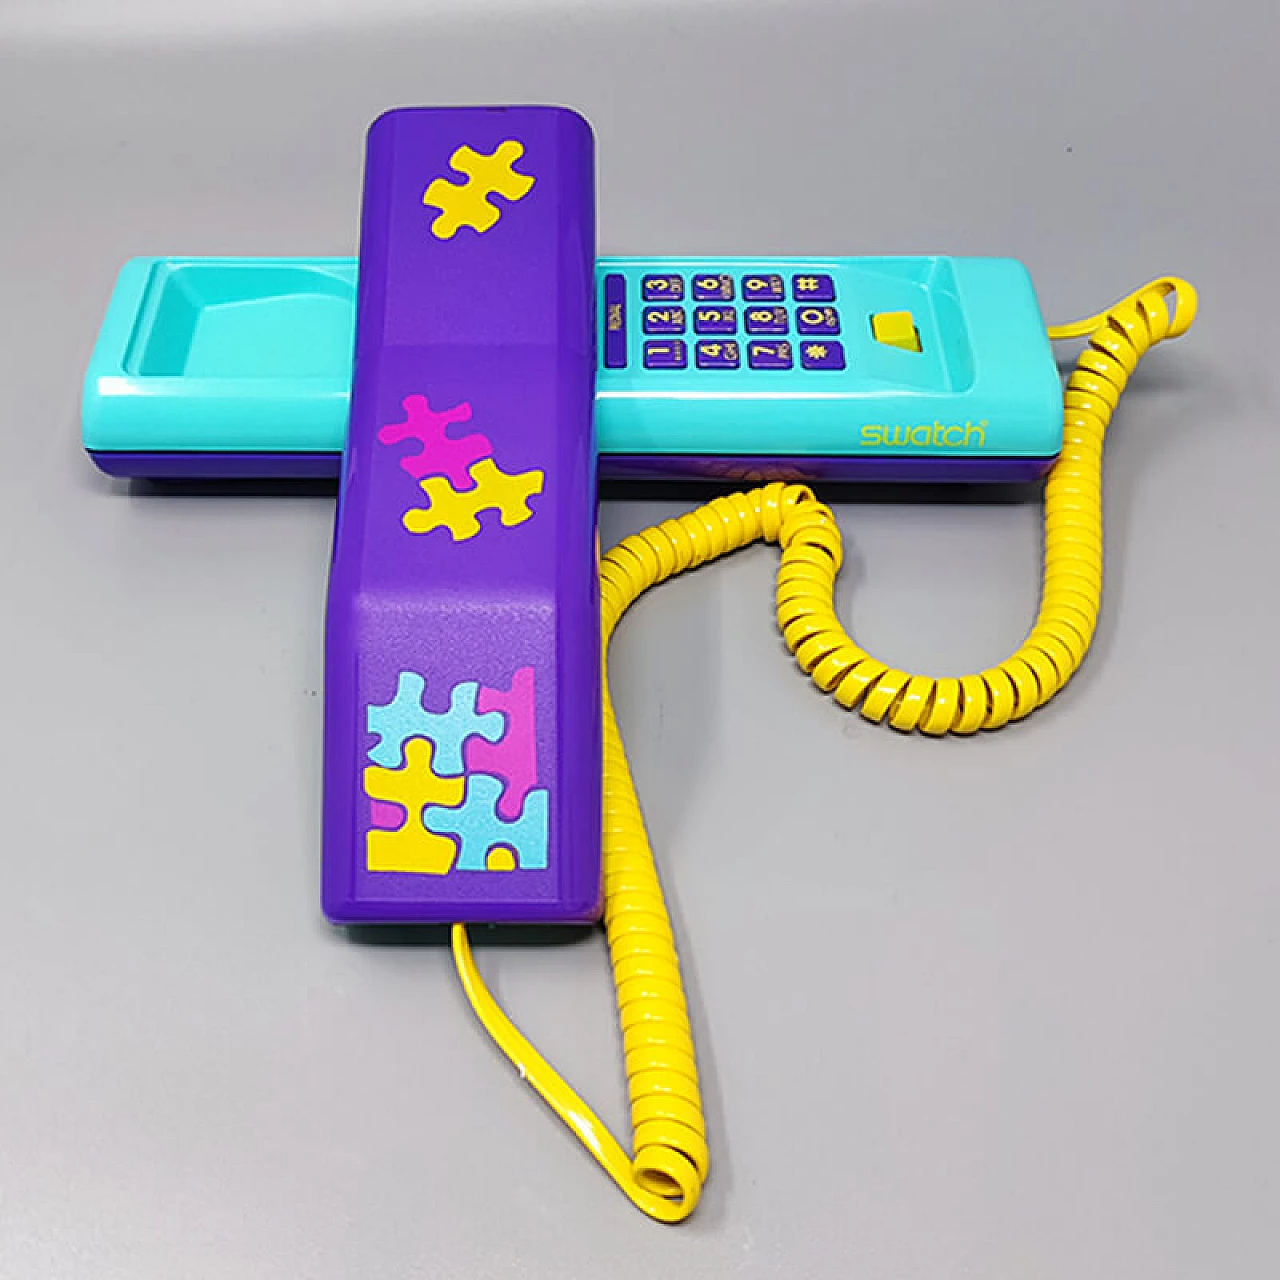 Telefono fisso Swatch Twin Phone Puzzle, anni '80 3